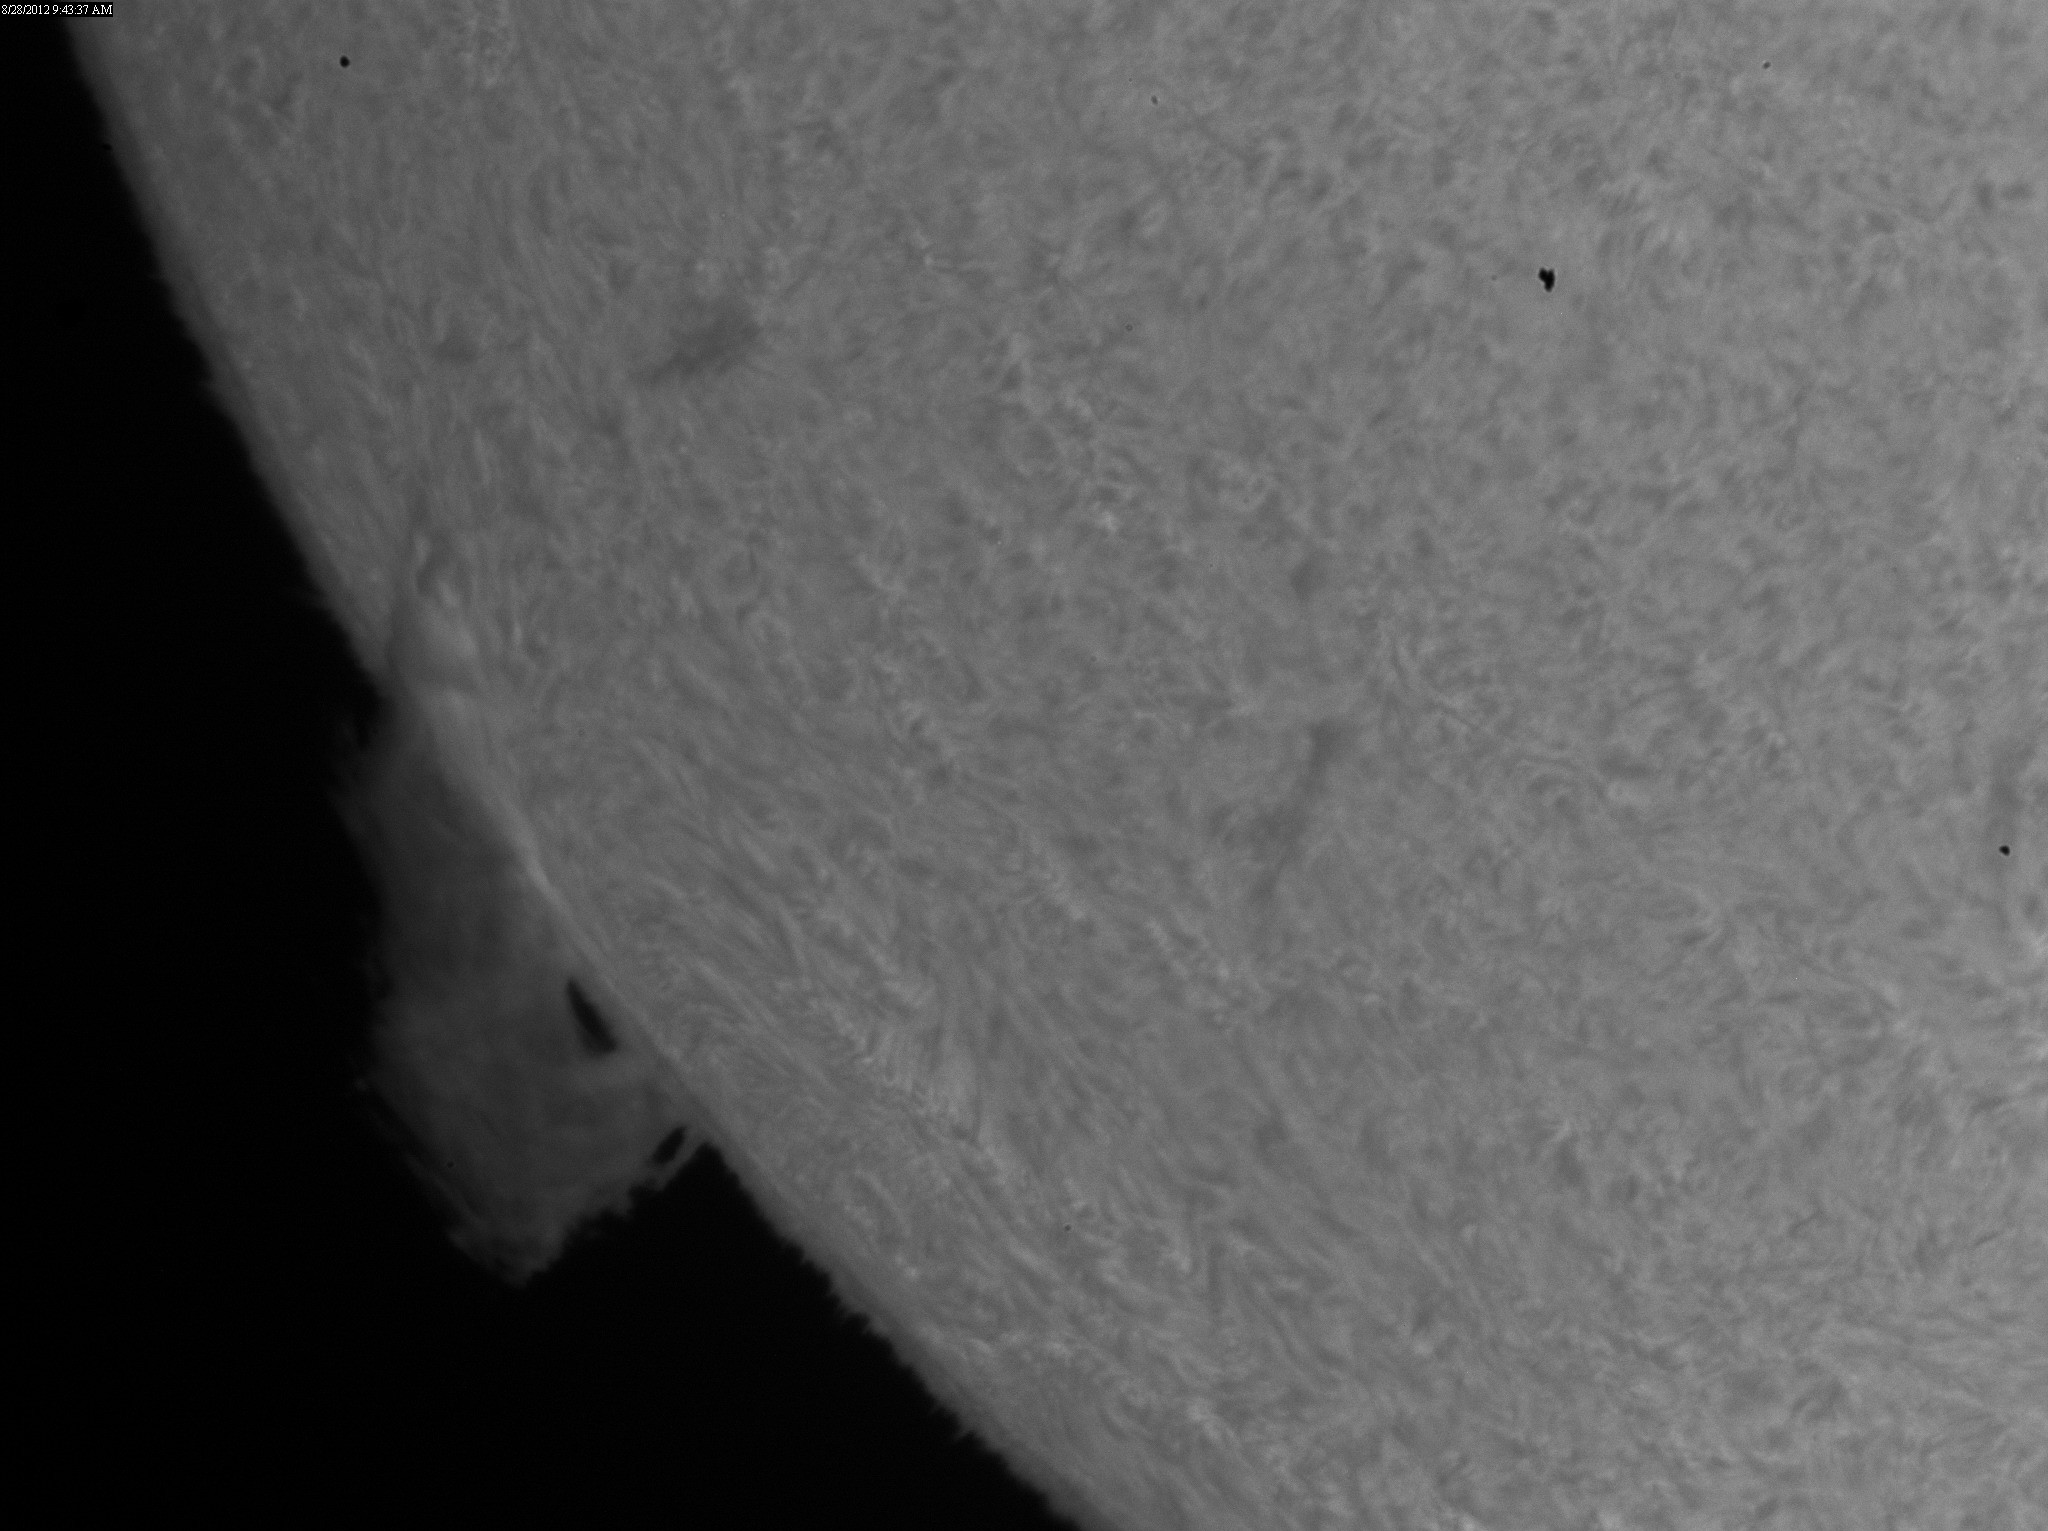 2012 Aug 28 Sun -huge prominence on SE limb